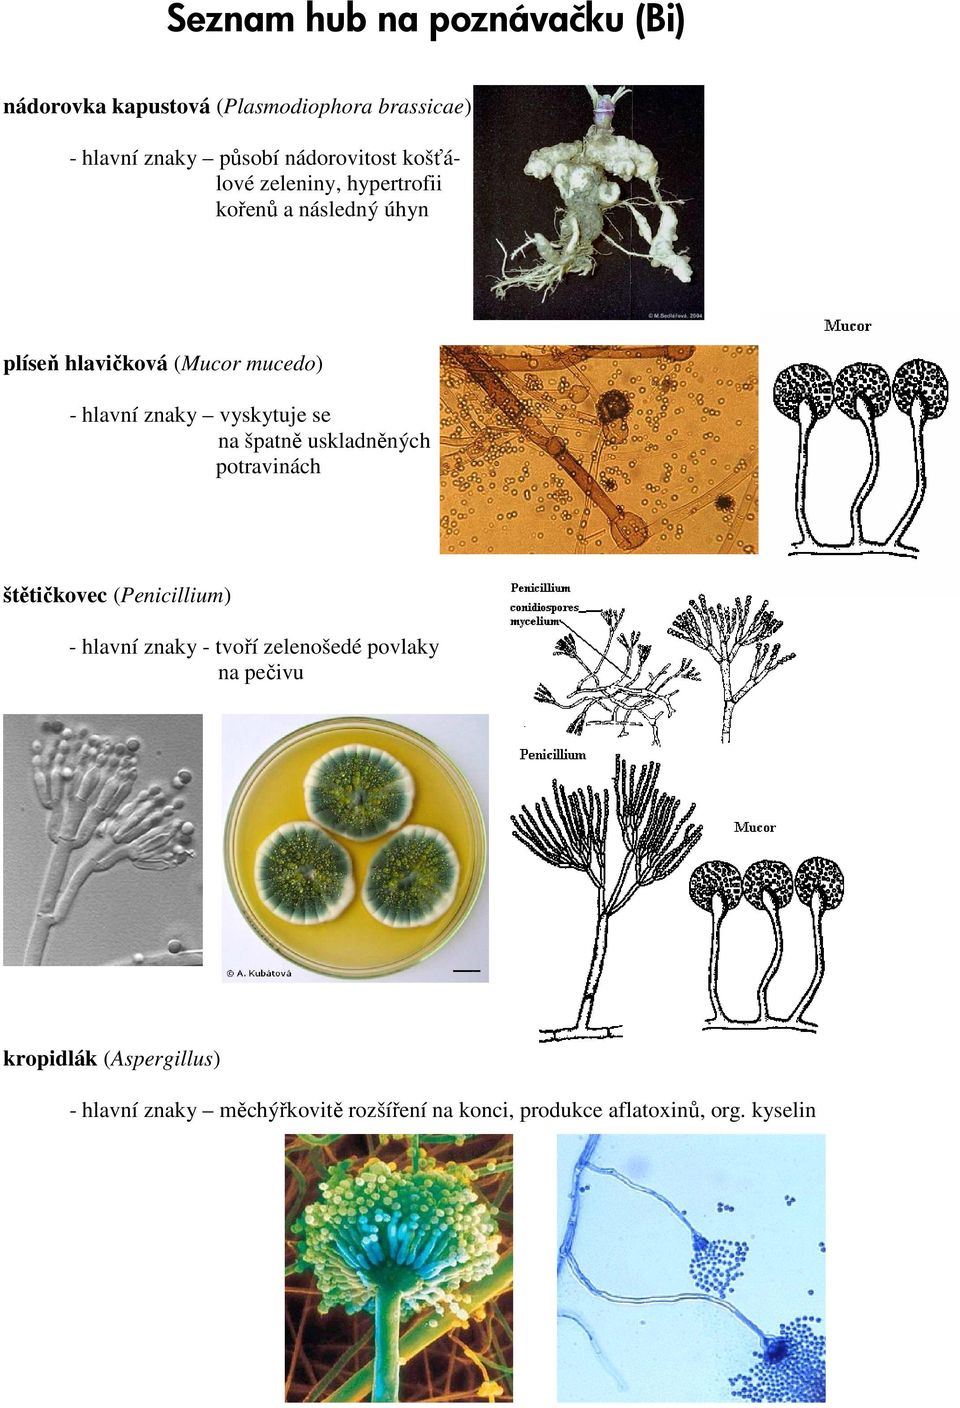 vyskytuje se na špatně uskladněných potravinách štětičkovec (Penicillium) - hlavní znaky - tvoří zelenošedé